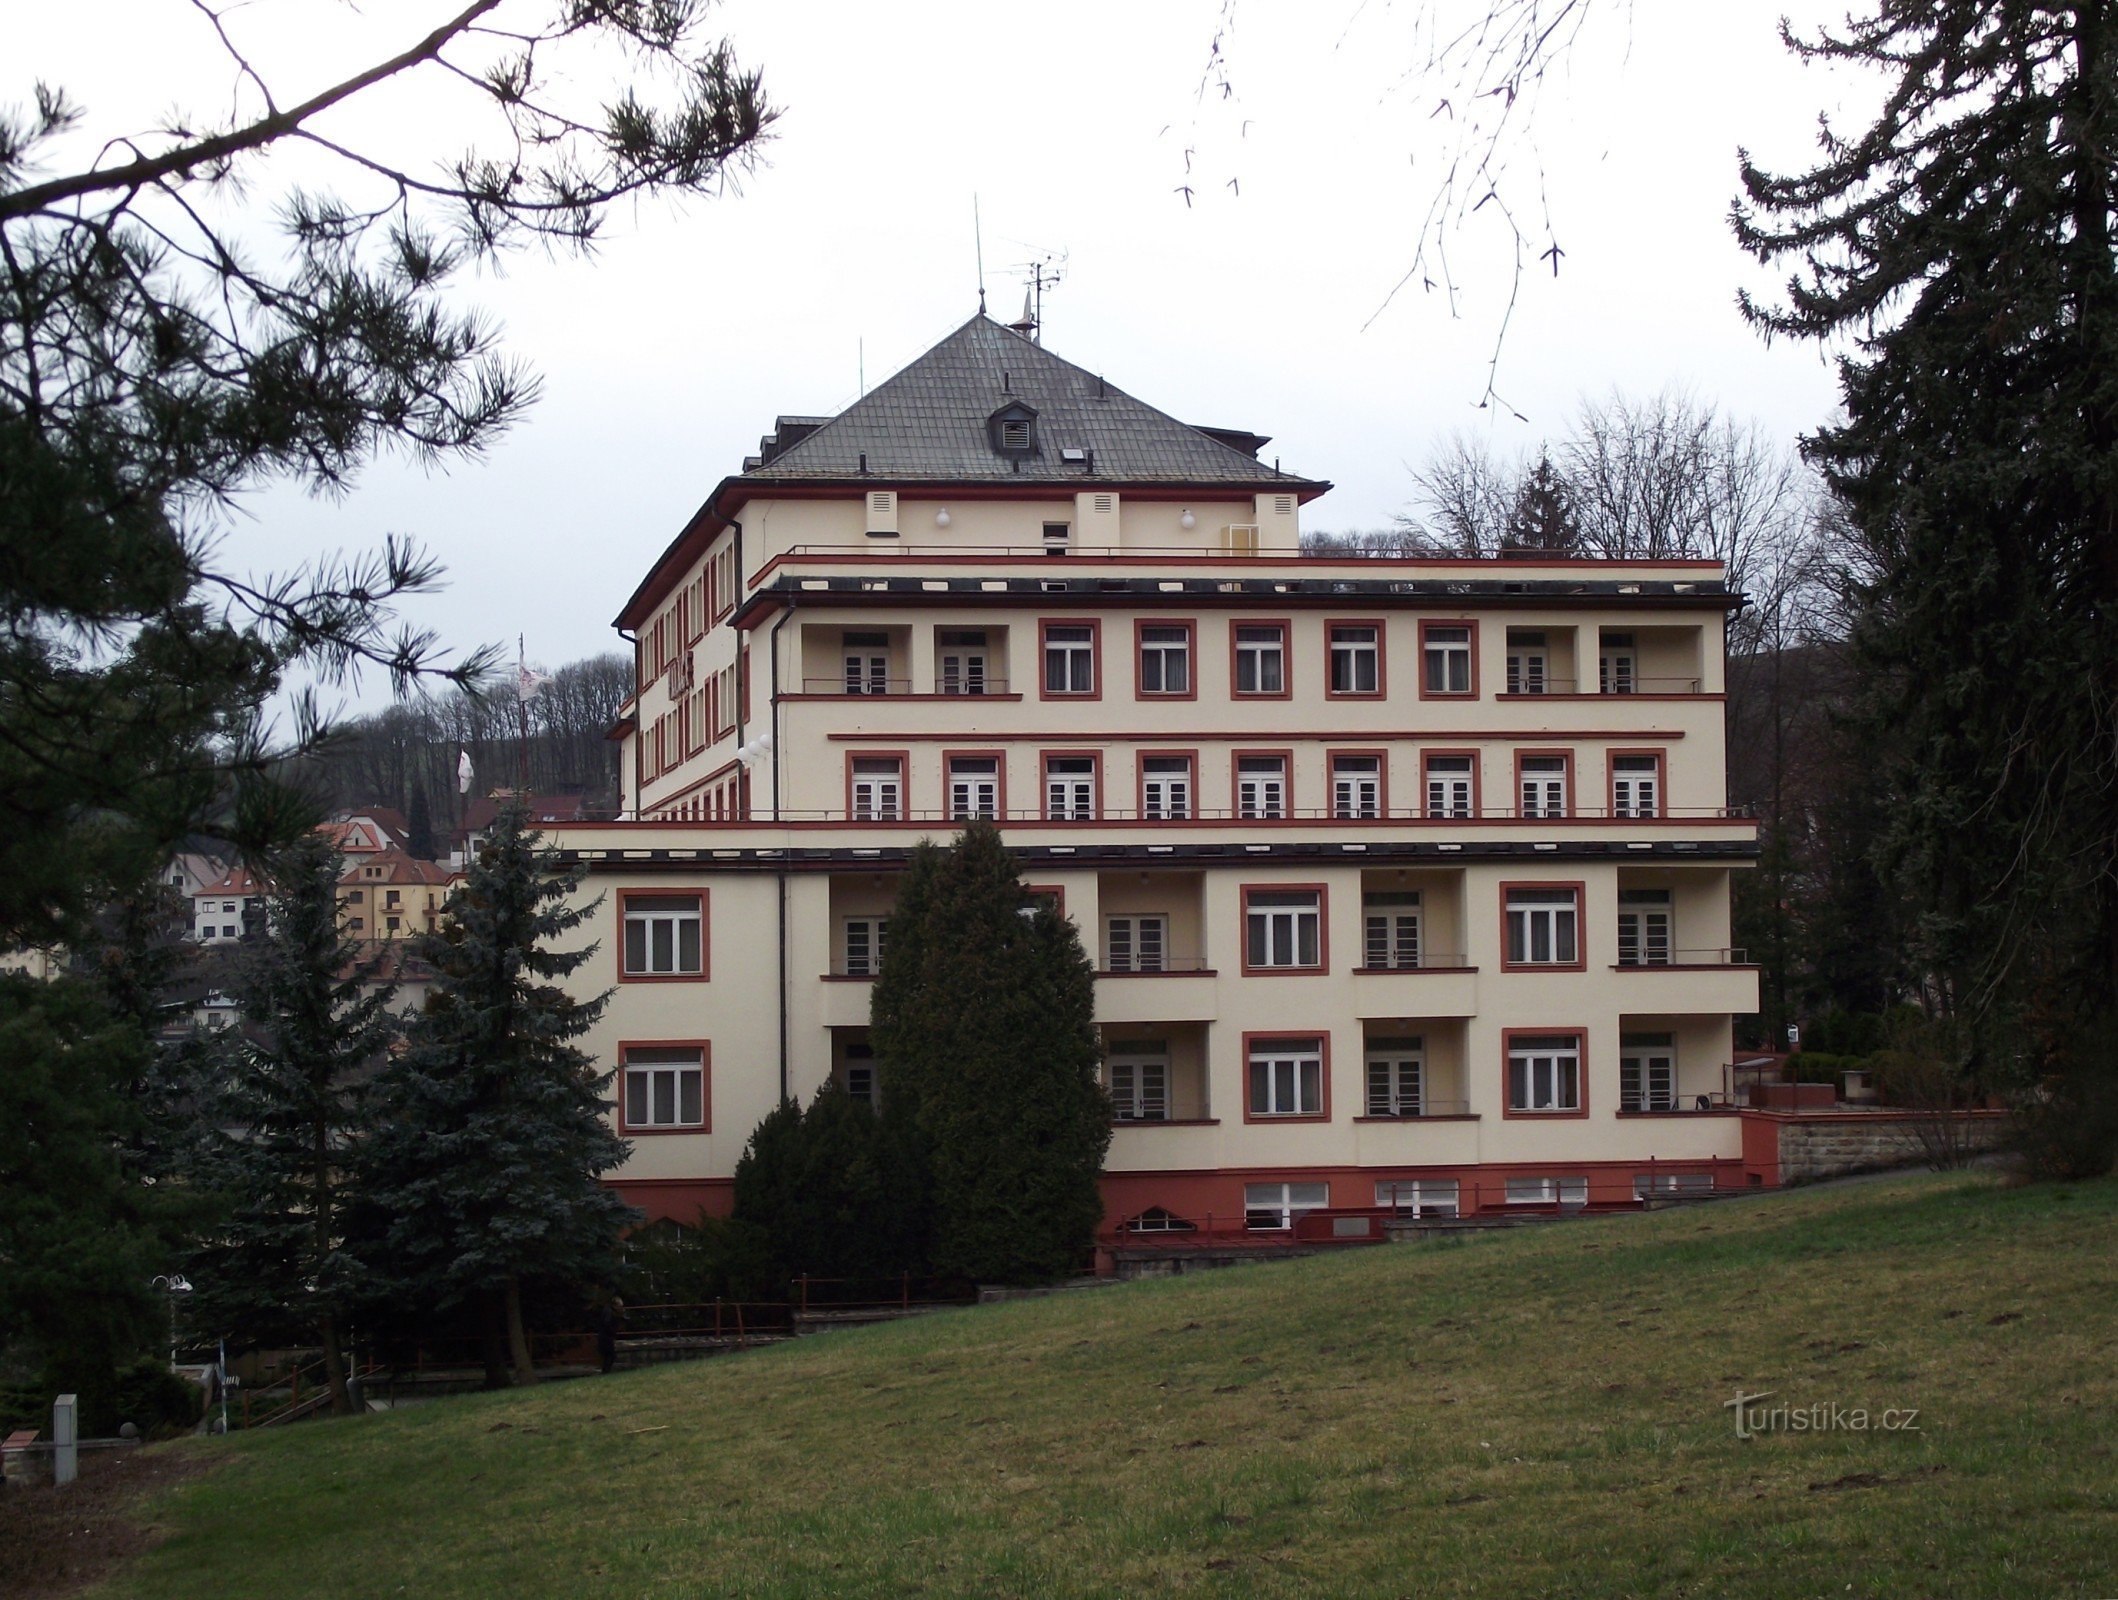 Luhačovice – Palace Hotel (Paleis Hotel Drtílek)